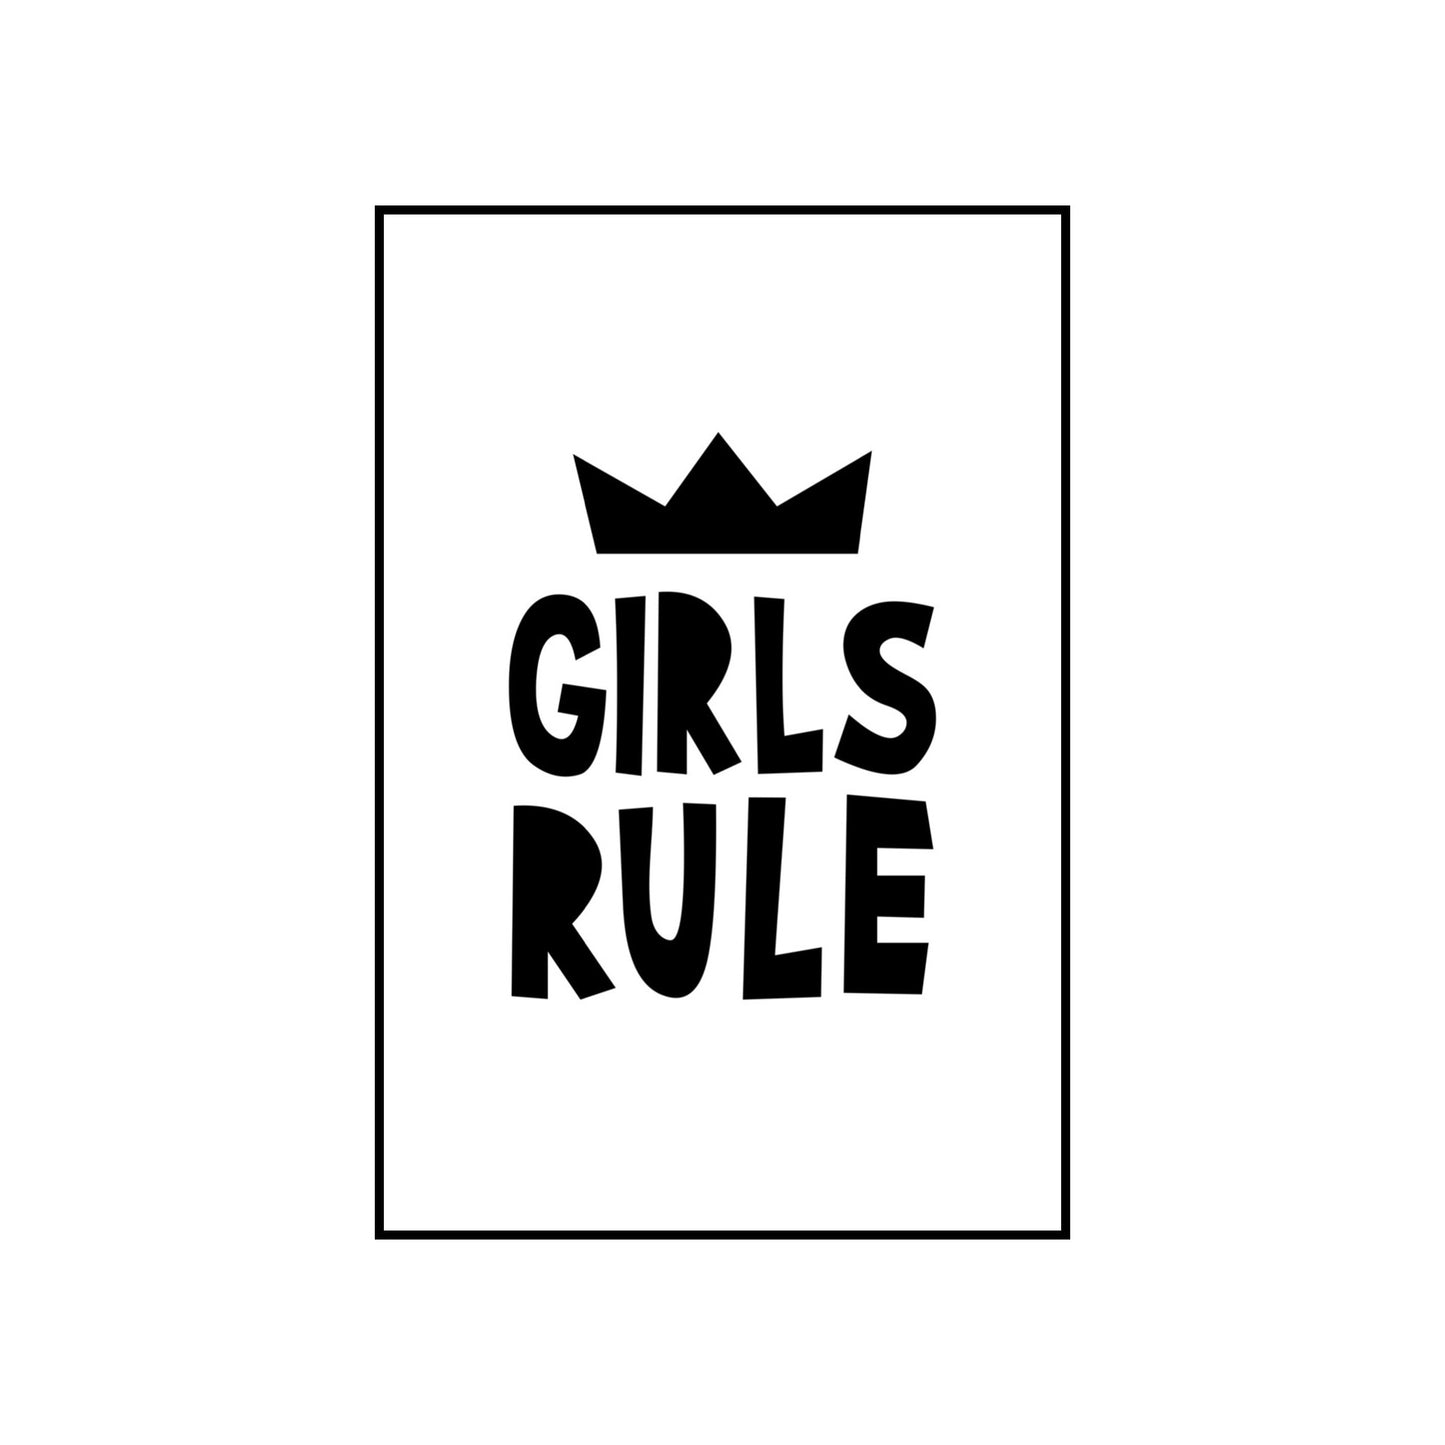 Girls rule - THE WALL STYLIST